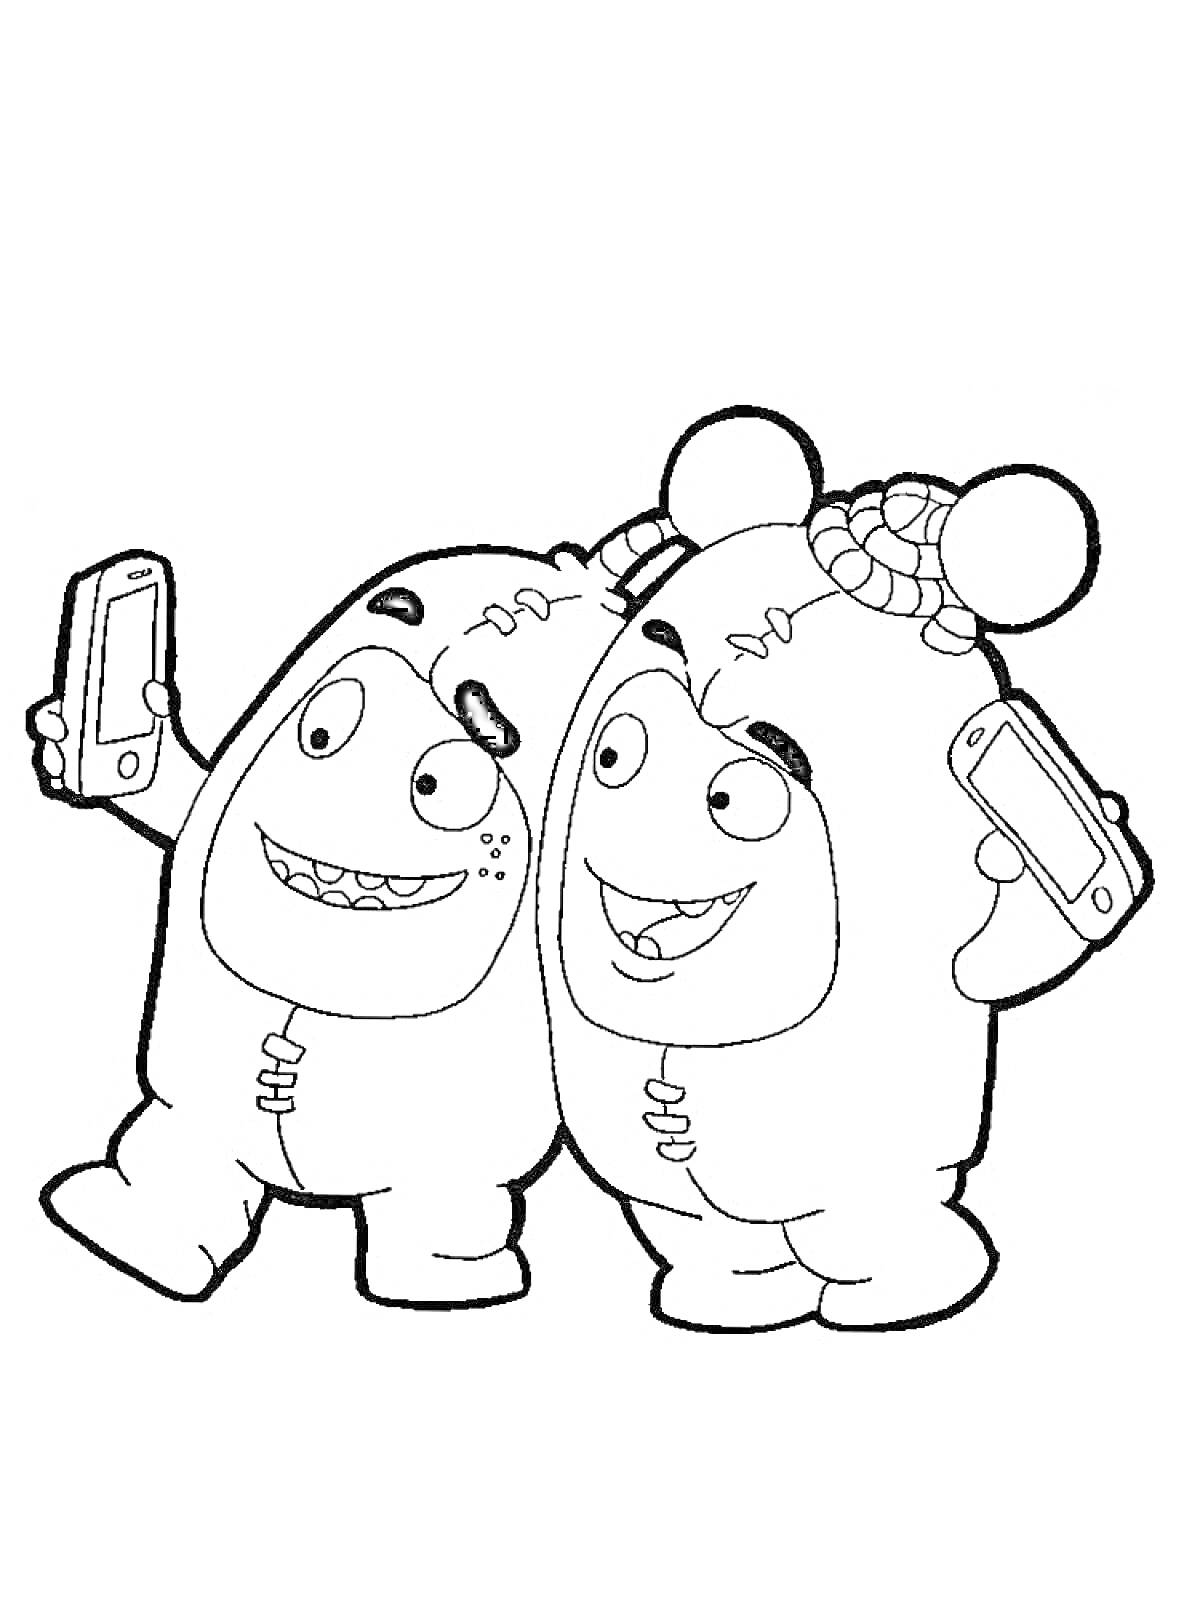 Раскраска Два чудика с телефоном делают селфи